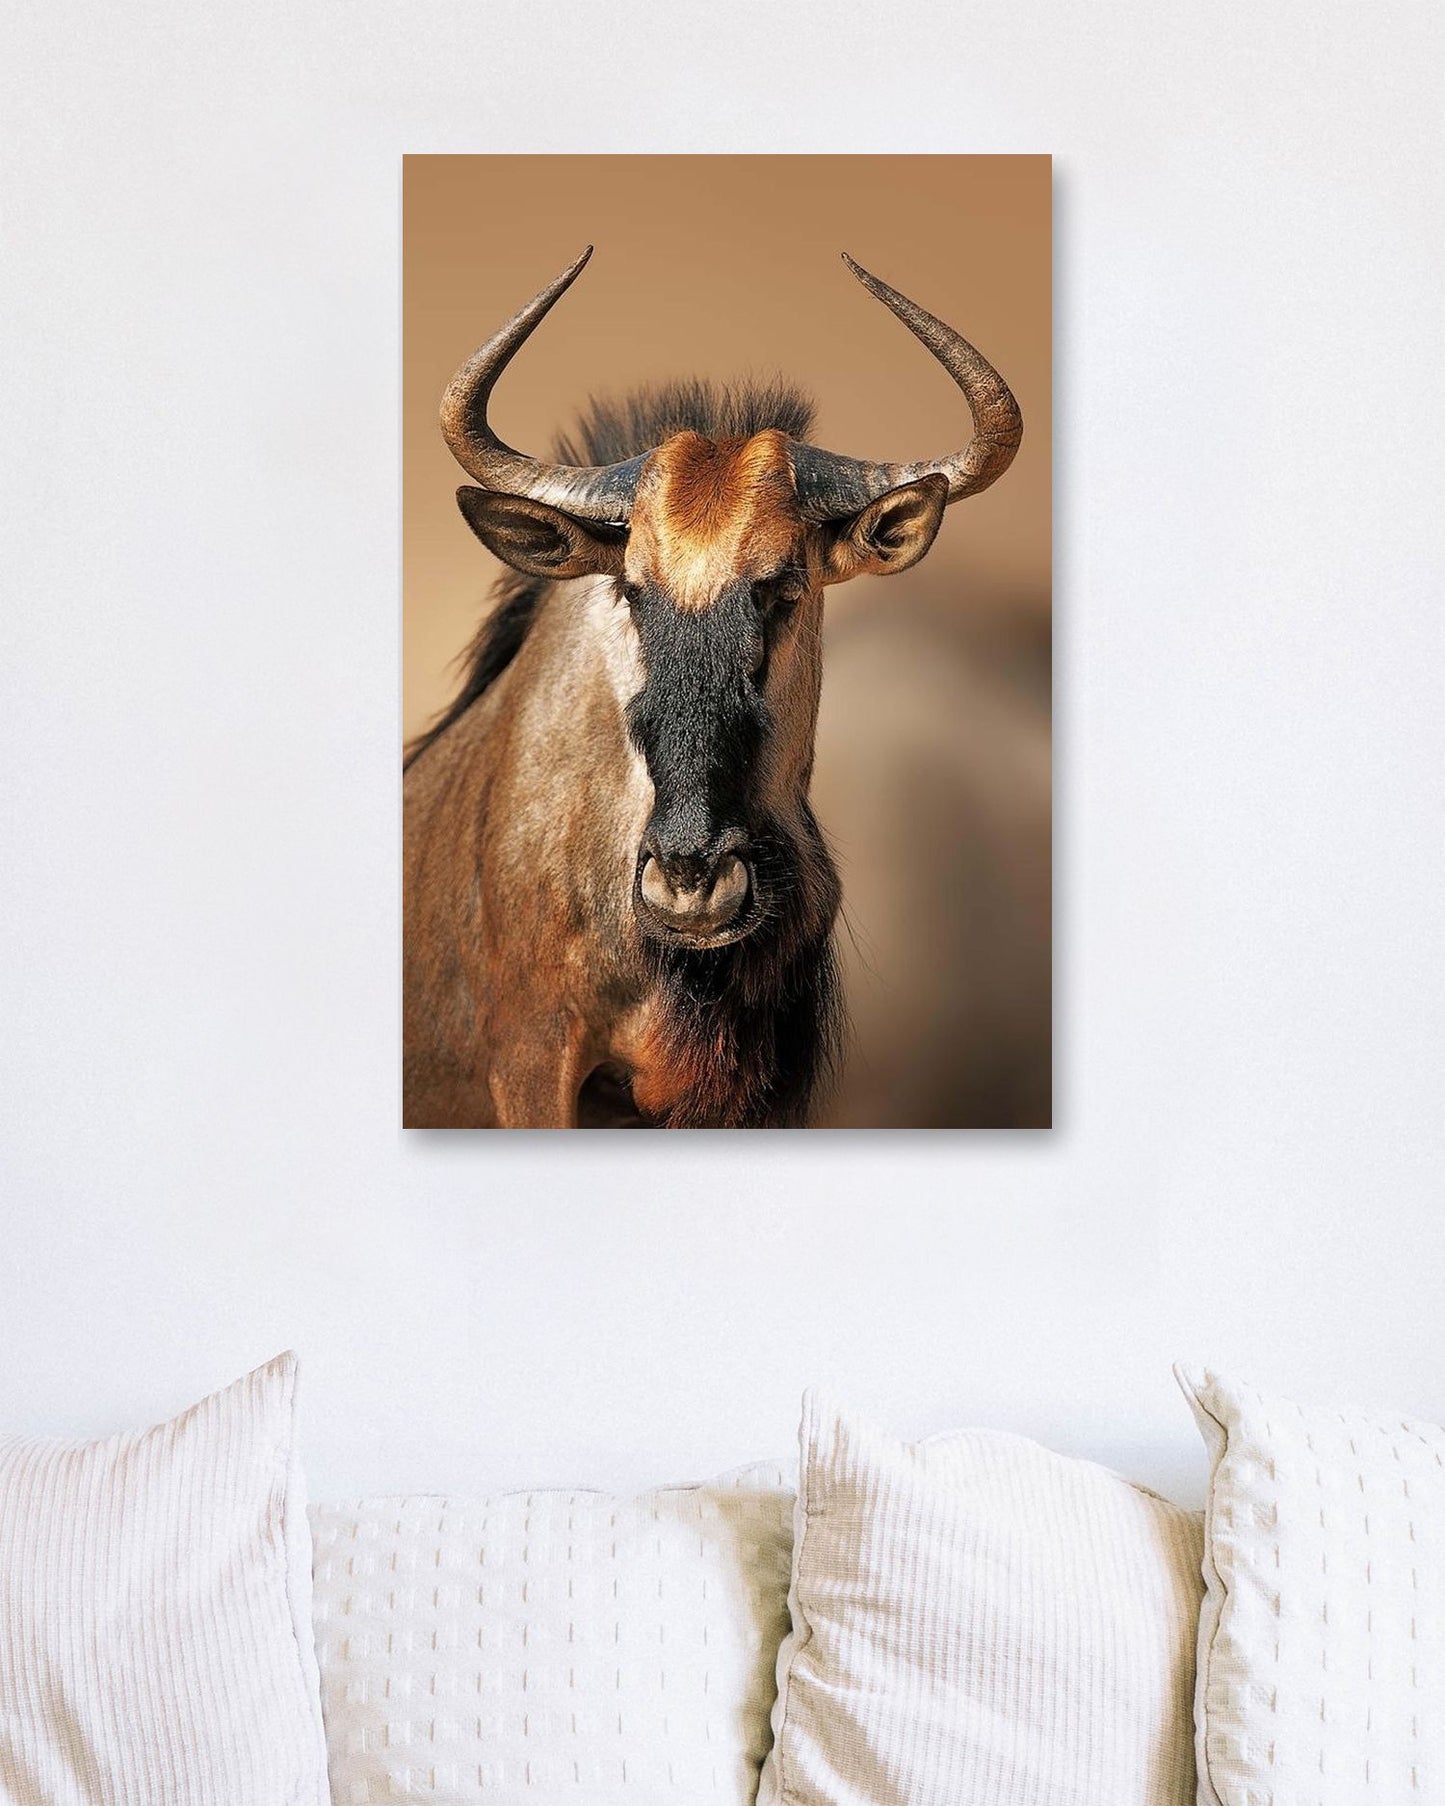 Blue wildebeest portrait - @chusna